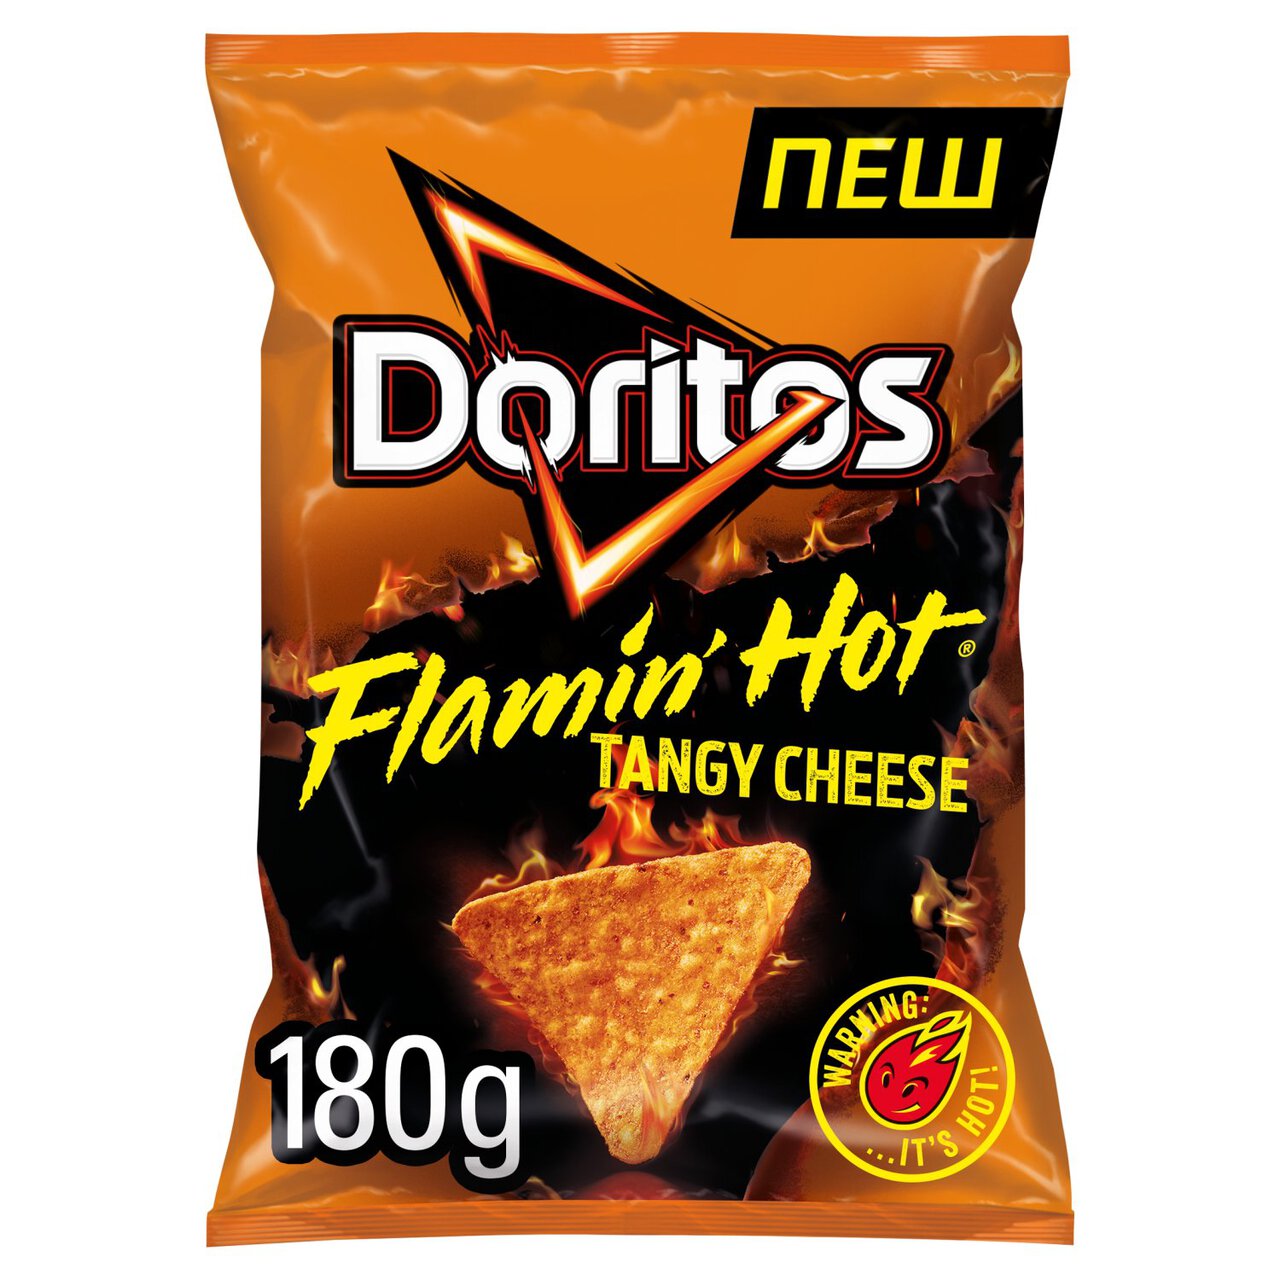 Doritos Flamin Hot Tortilla Sharing Chips 180g